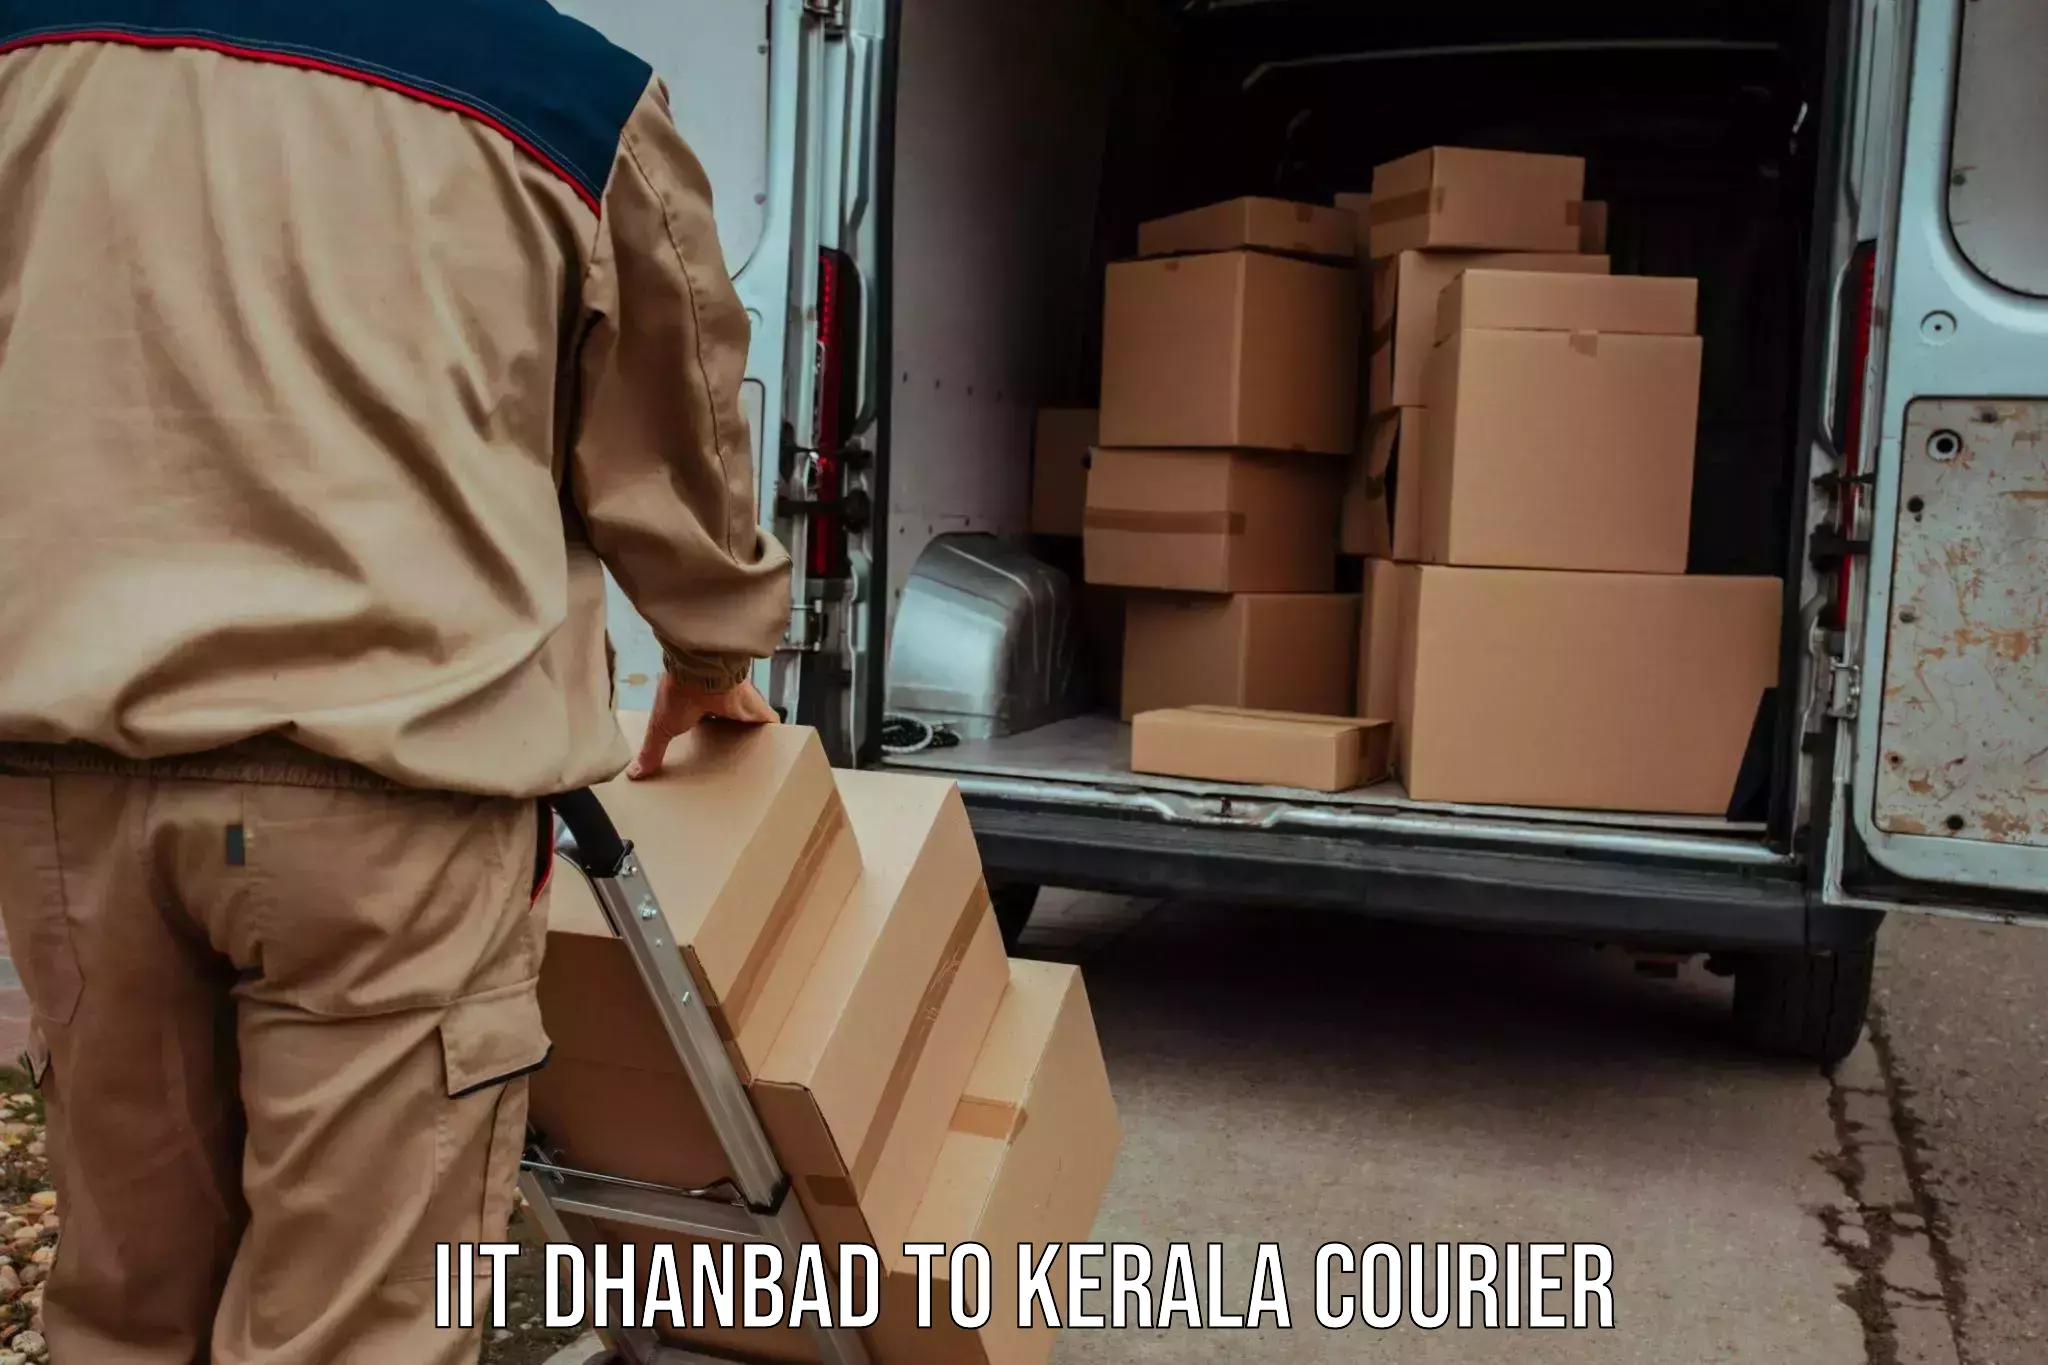 24/7 courier service IIT Dhanbad to Udumbanchola